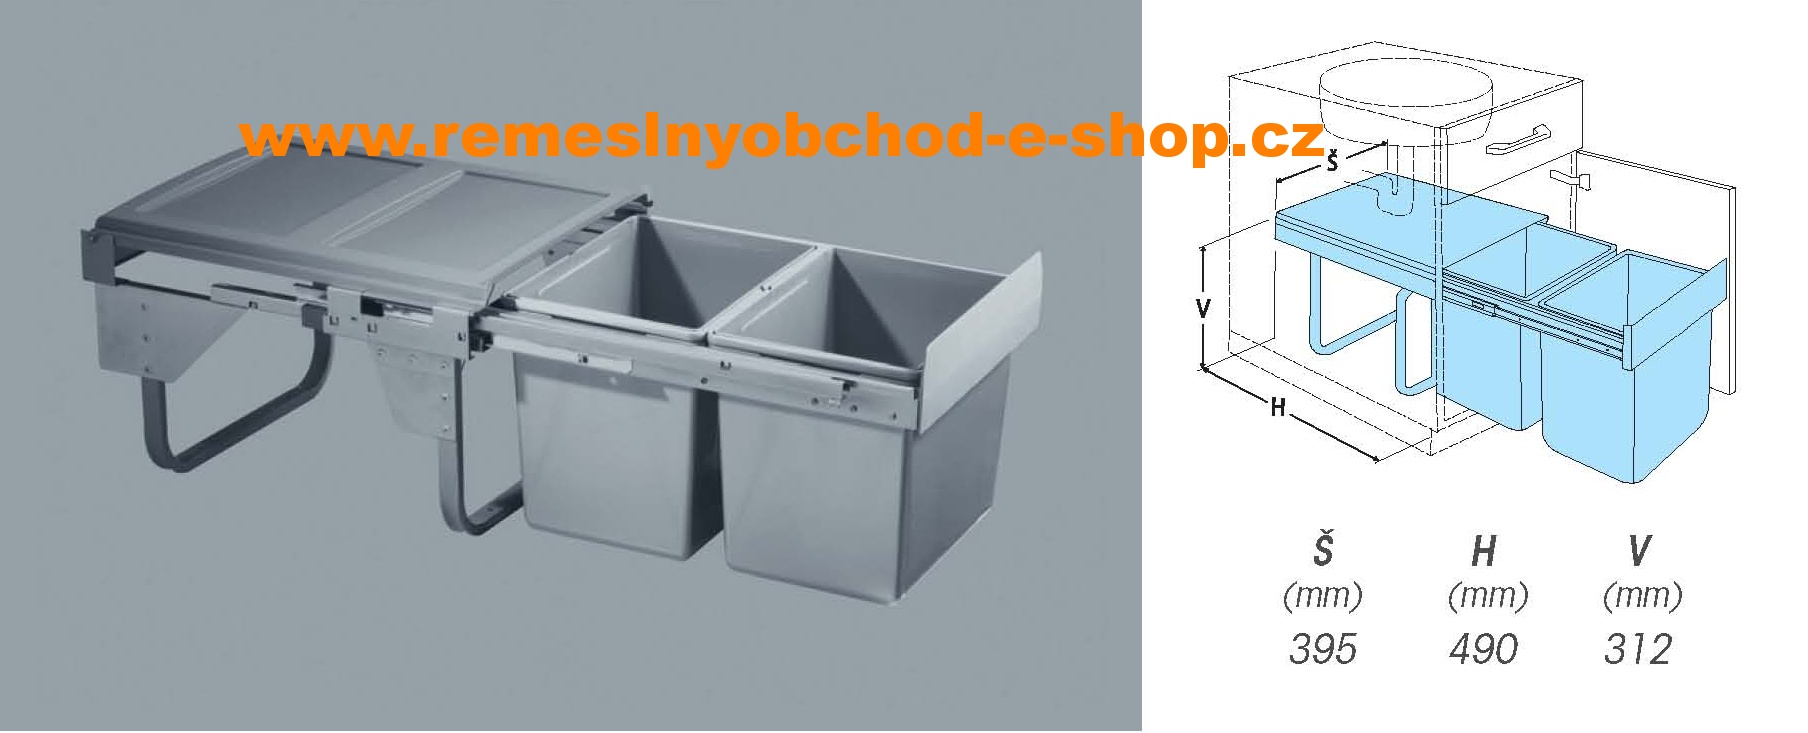 Výsuvný odpadkový 2- koš Komfort, 2x15 l, K45-šedý plast Tento druh odpadkového koše je určen pro umístění pod dřez.